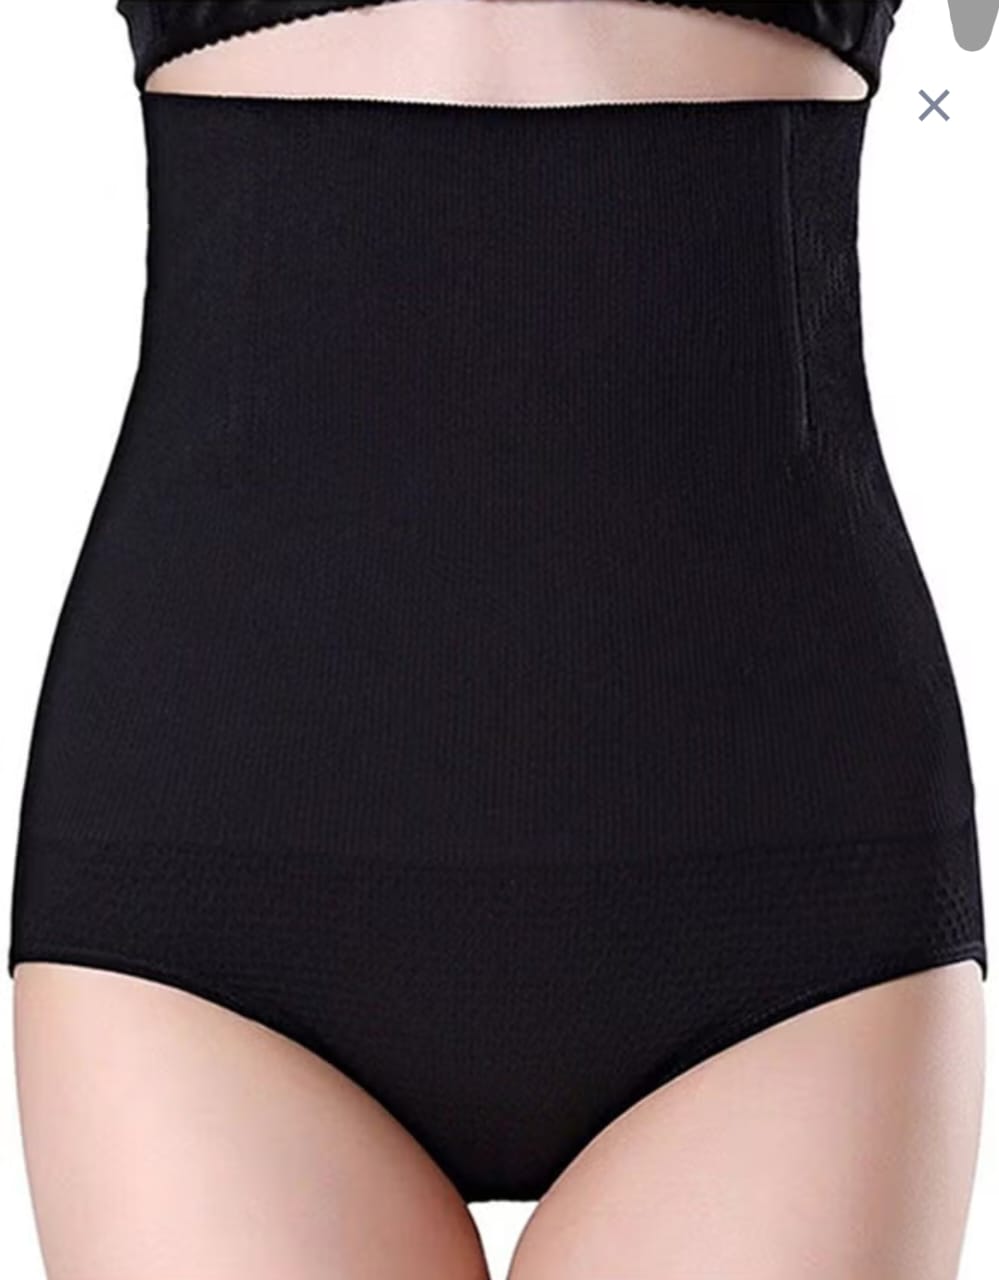 Shaper Panty For Women Seamless Lightweight Tummy Control Briefs Underwear Girdle Shapewear (Medium)